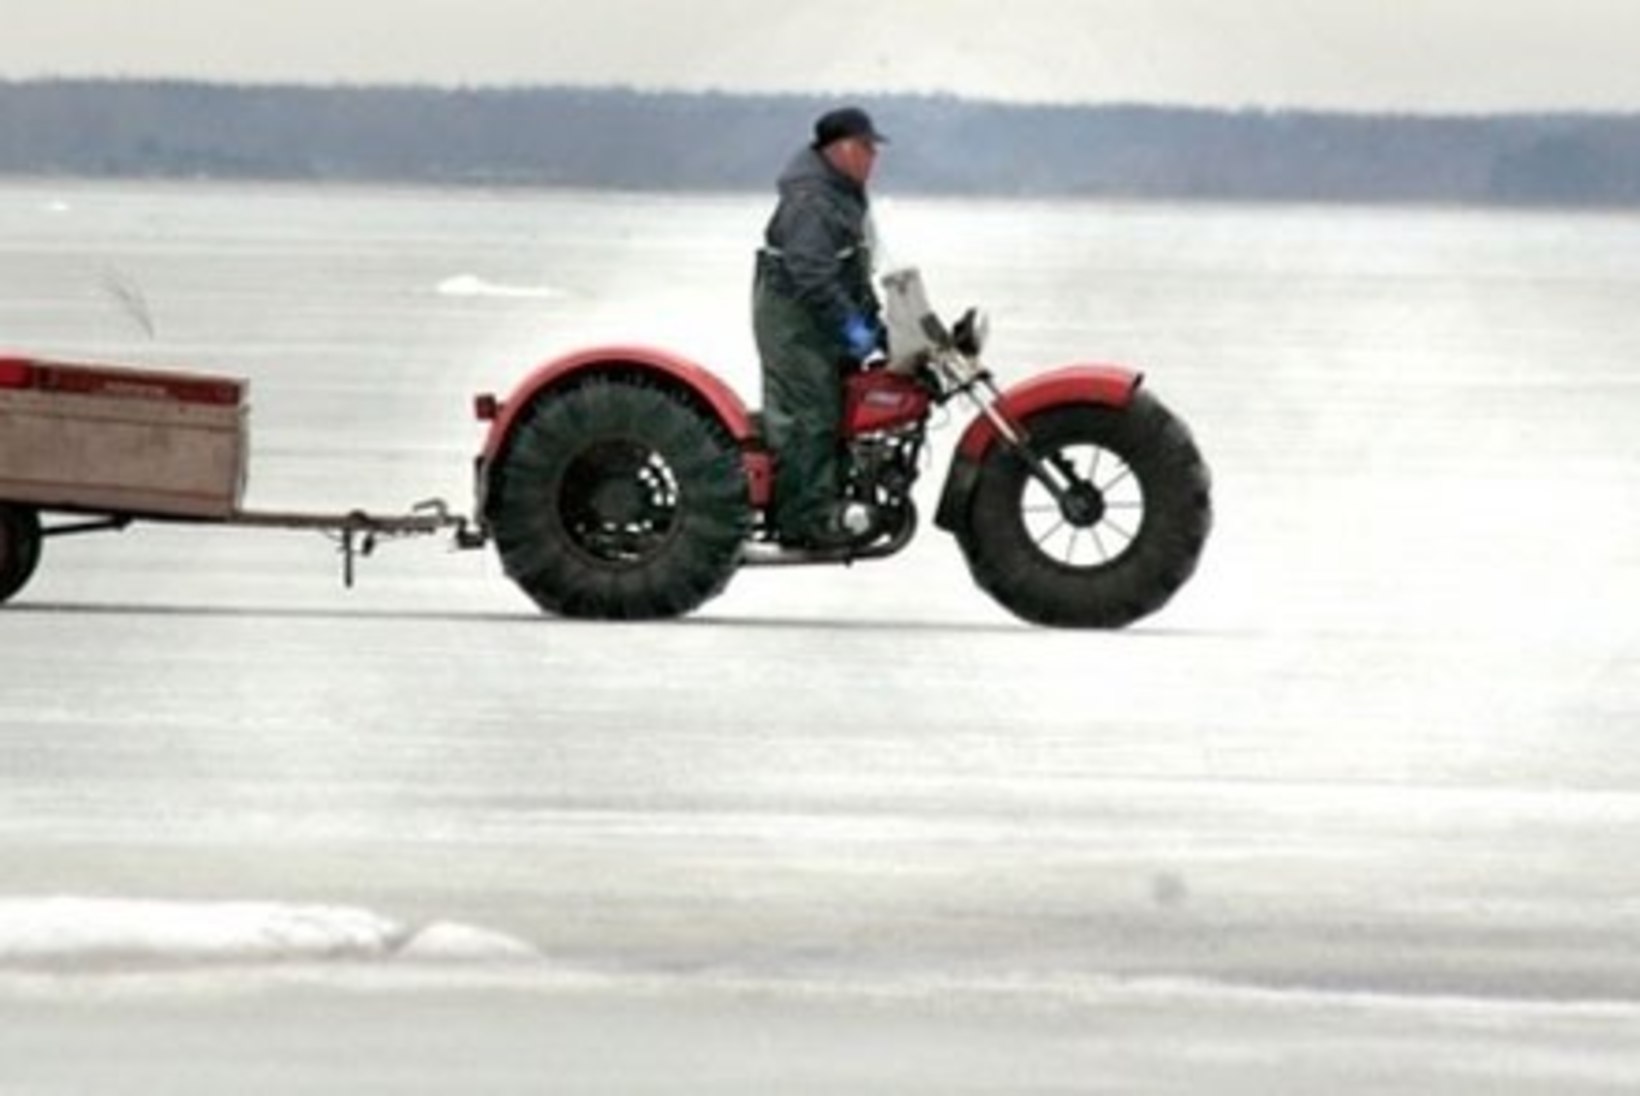 Pärnu lahel vajusid viis Läti kalameest koos mootorrattaga läbi jää